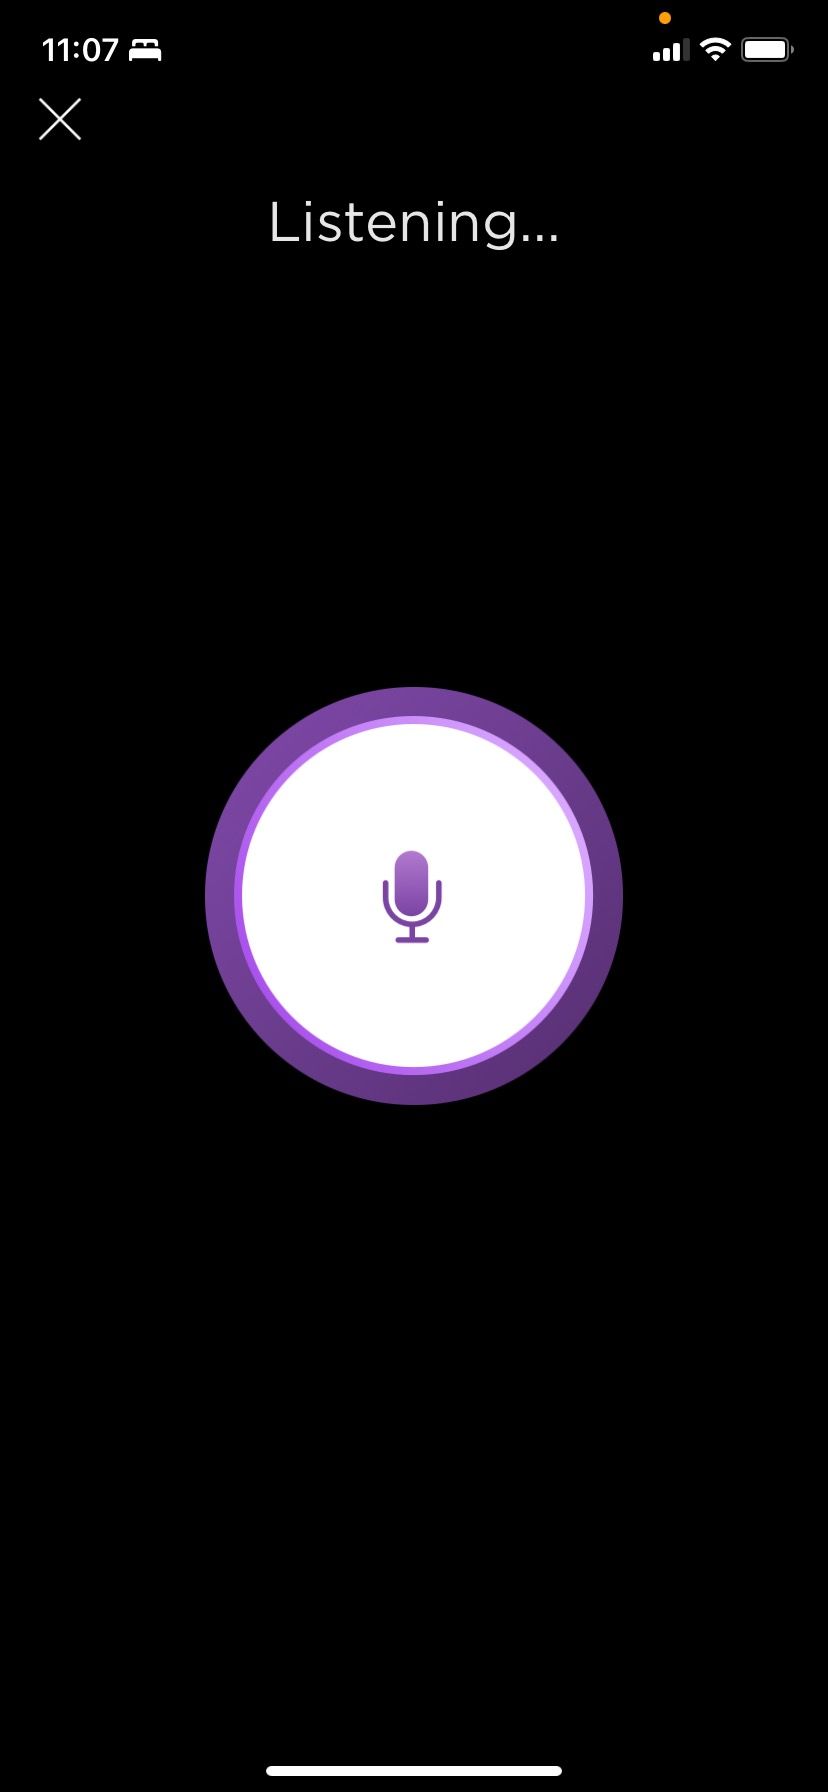 Roku app voice control remote